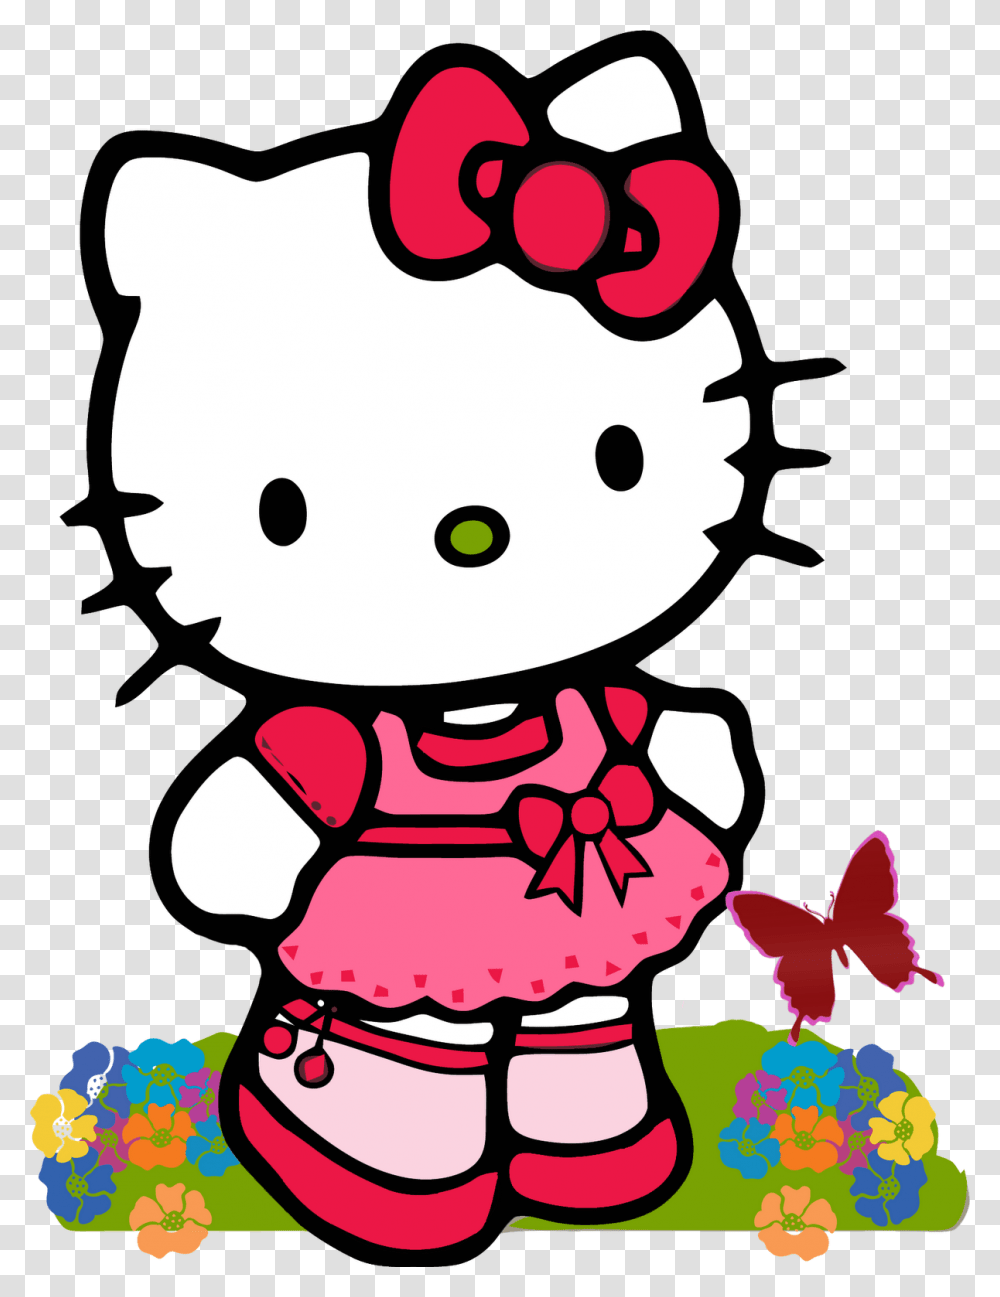 Hello Kitty Amigas Alguien Quien Me Comparta Imagenes De Hello, Toy, Doll, Plush Transparent Png